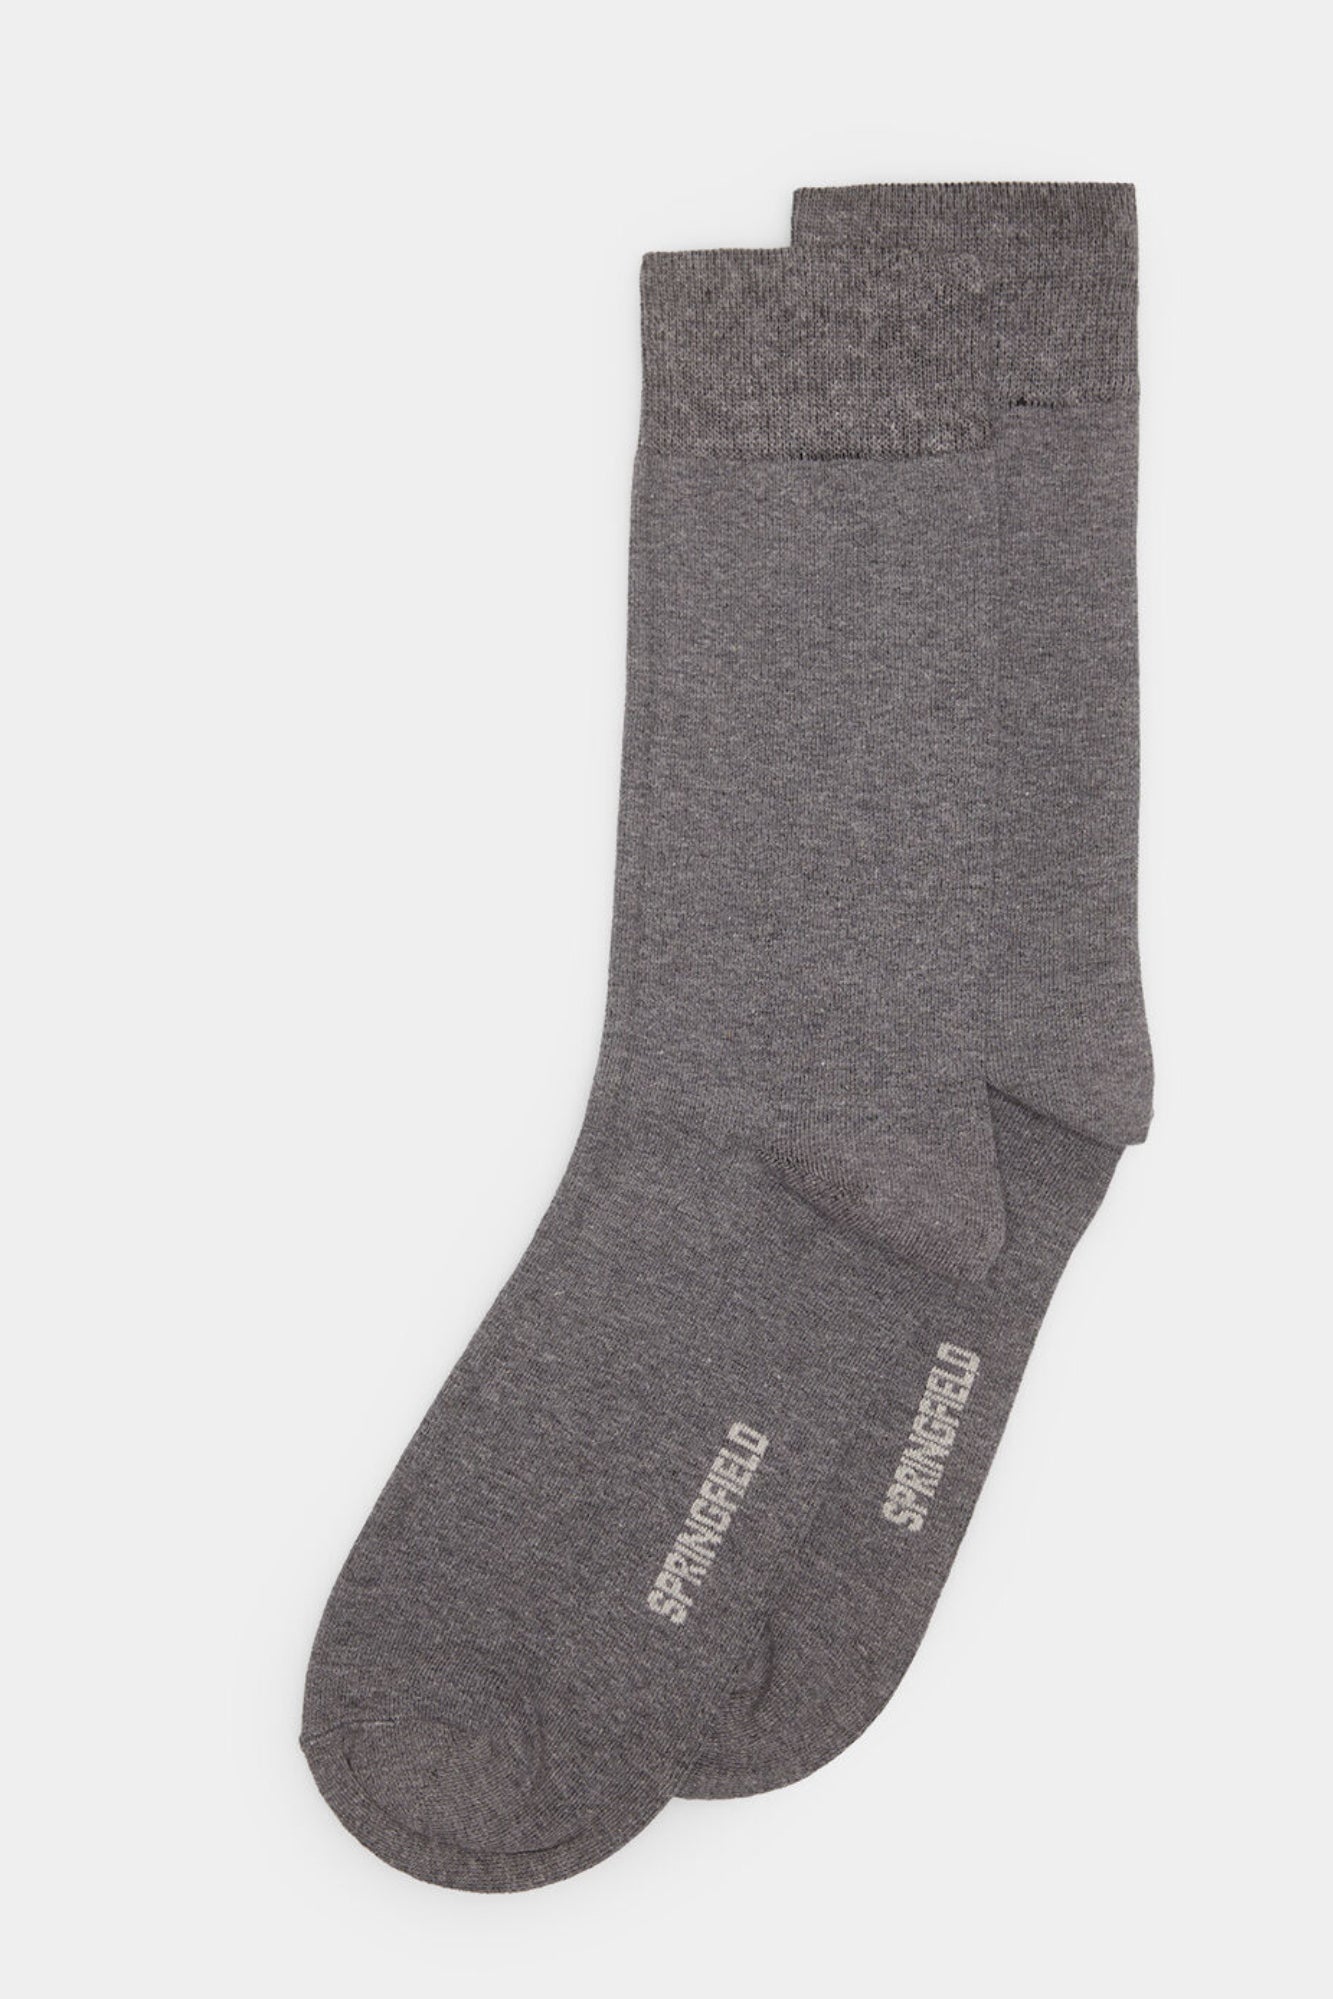 Grey Plain High Socks - 1 Pair